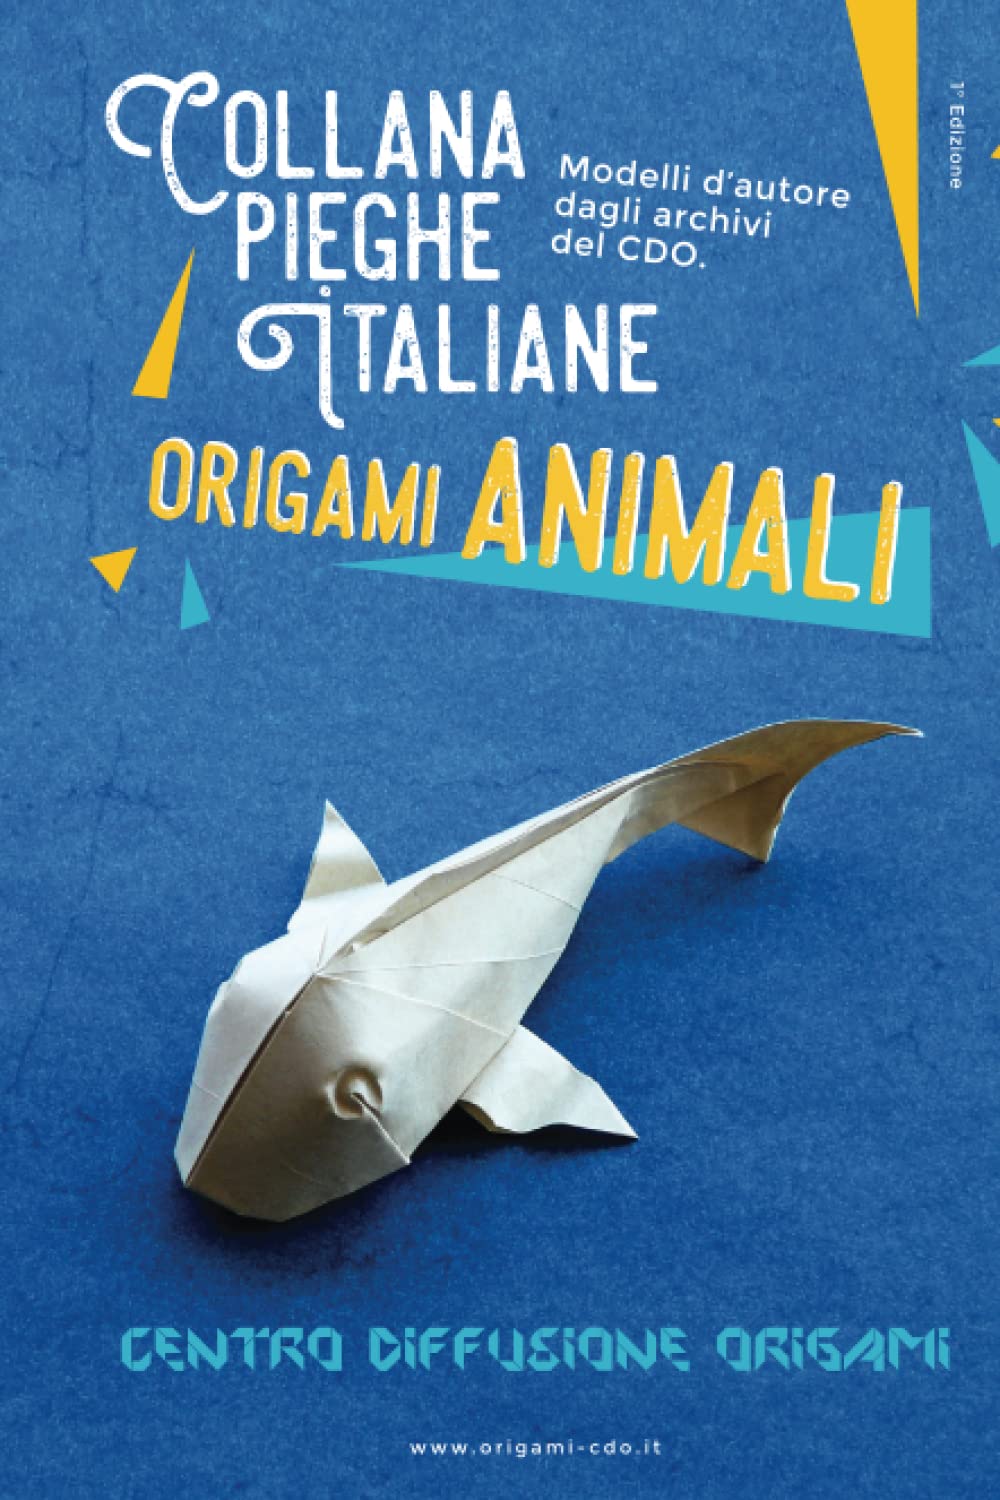 Collana pieghe Italiane - origami ANIMALI : page 70.